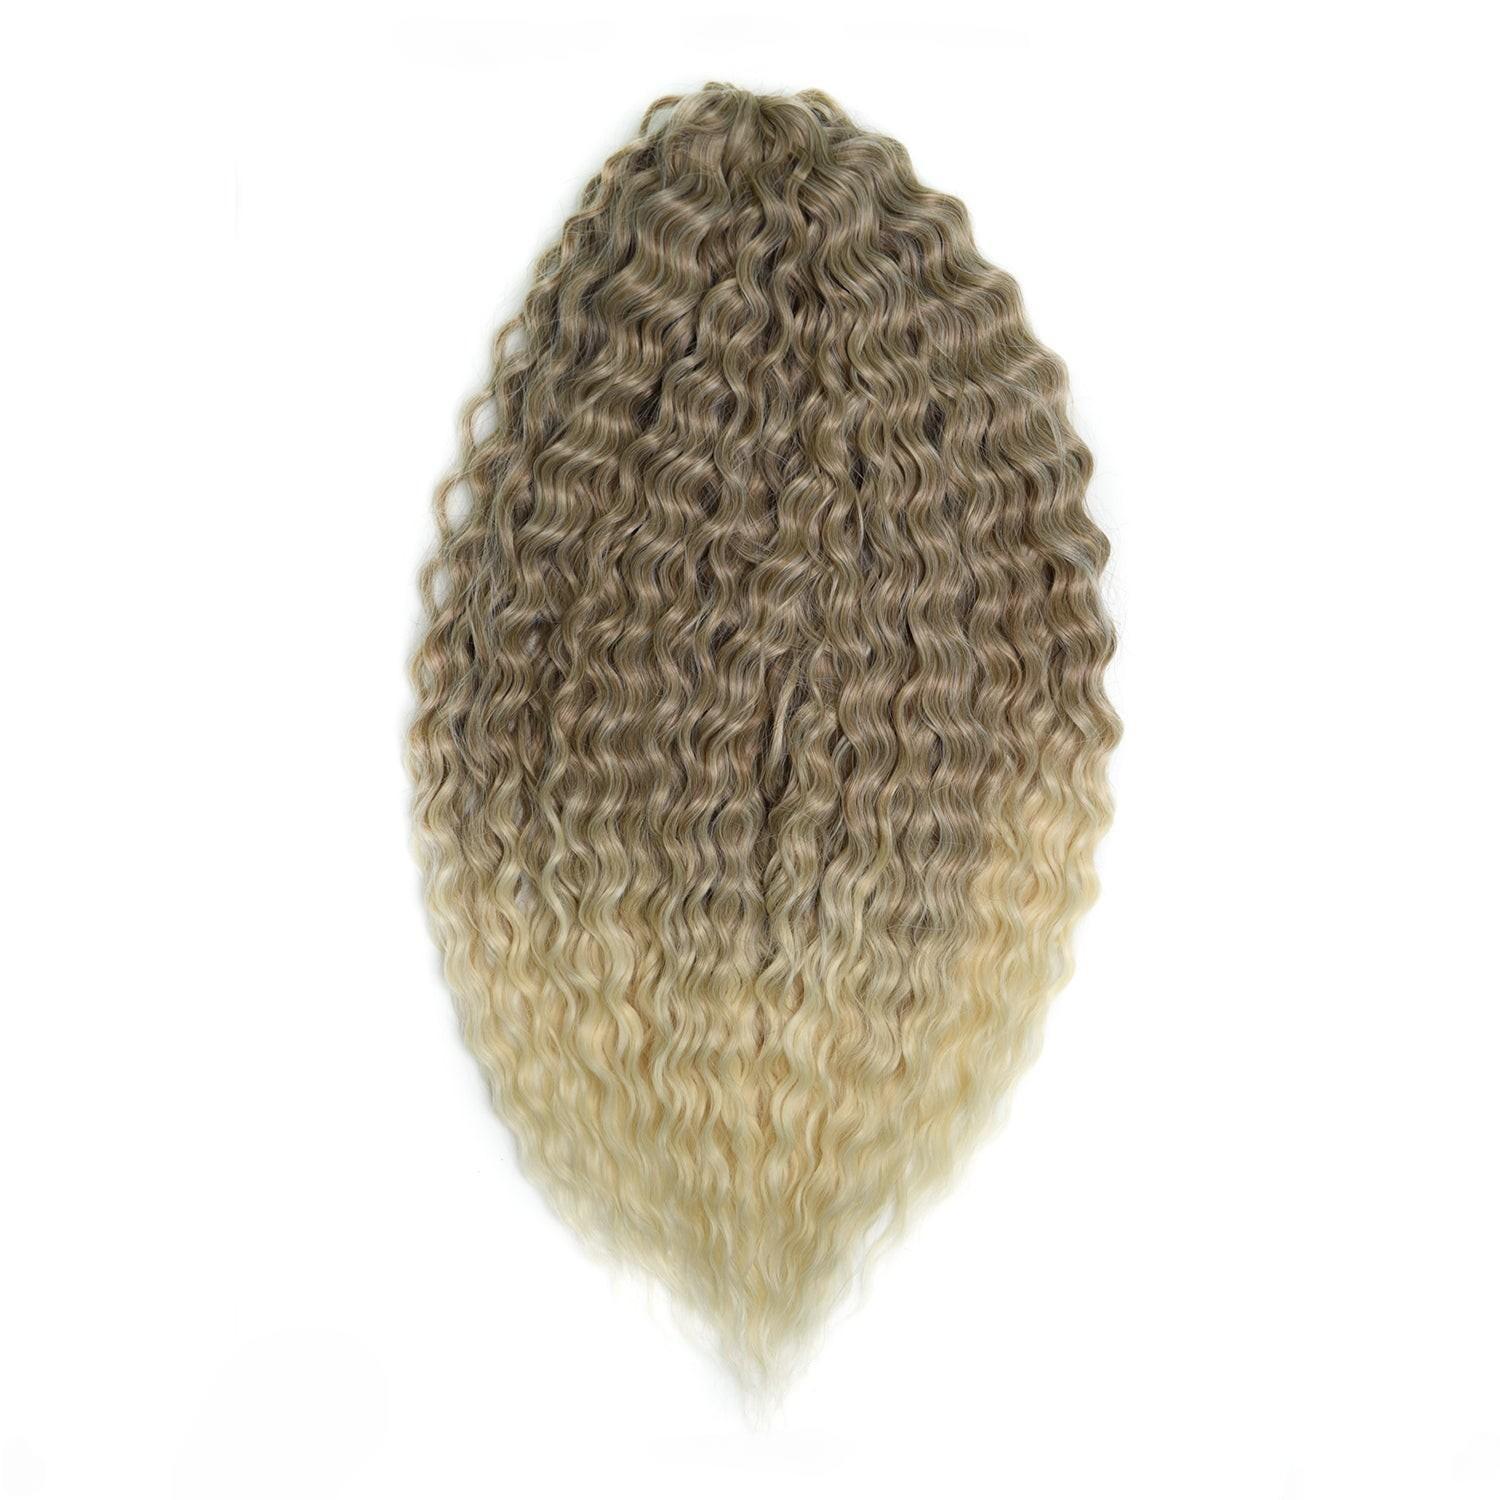 Афрокудри для плетения волос Ariel цвет 62 русый длина 60см вес 300г афрокудри для плетения волос ariel ариэль fire оранжевый длина 66см вес 300г